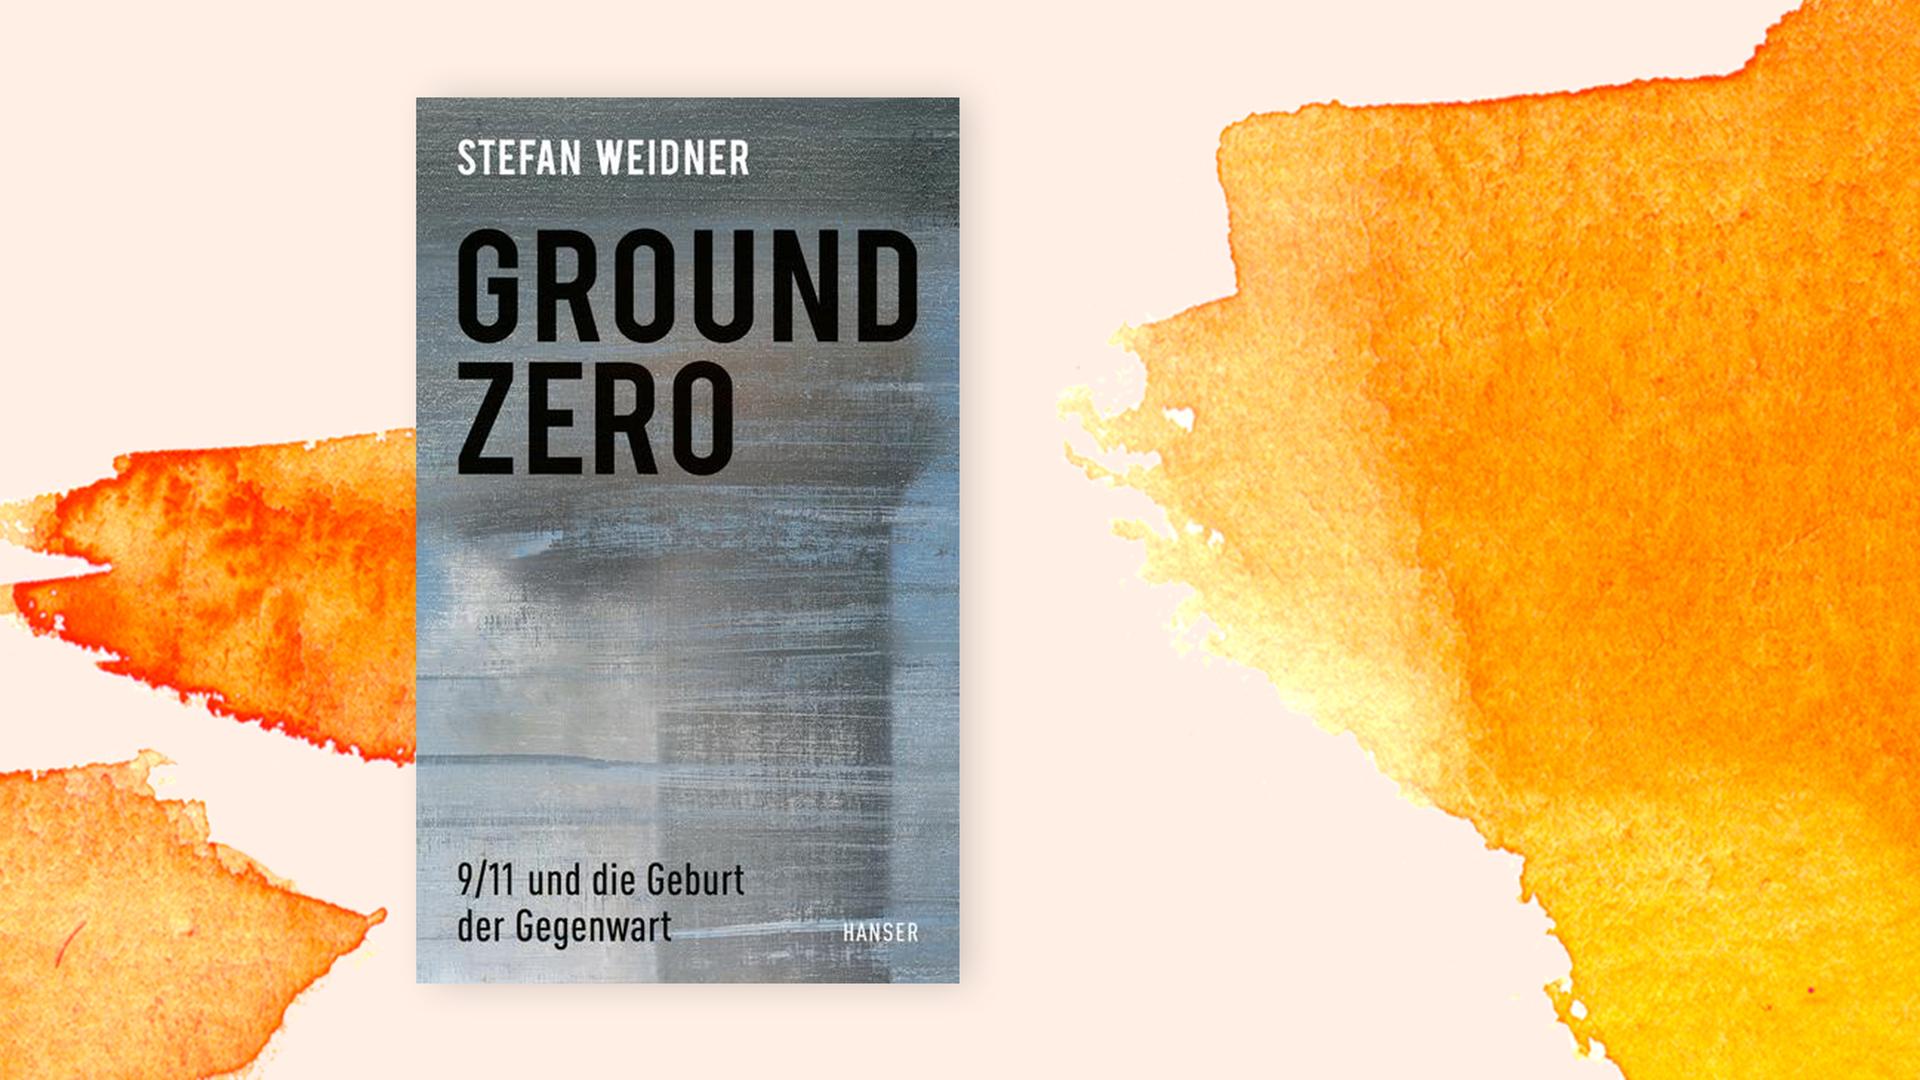 Stefan Weidners Buch Ground Zero auf orangenem Pastell-Untergrund.